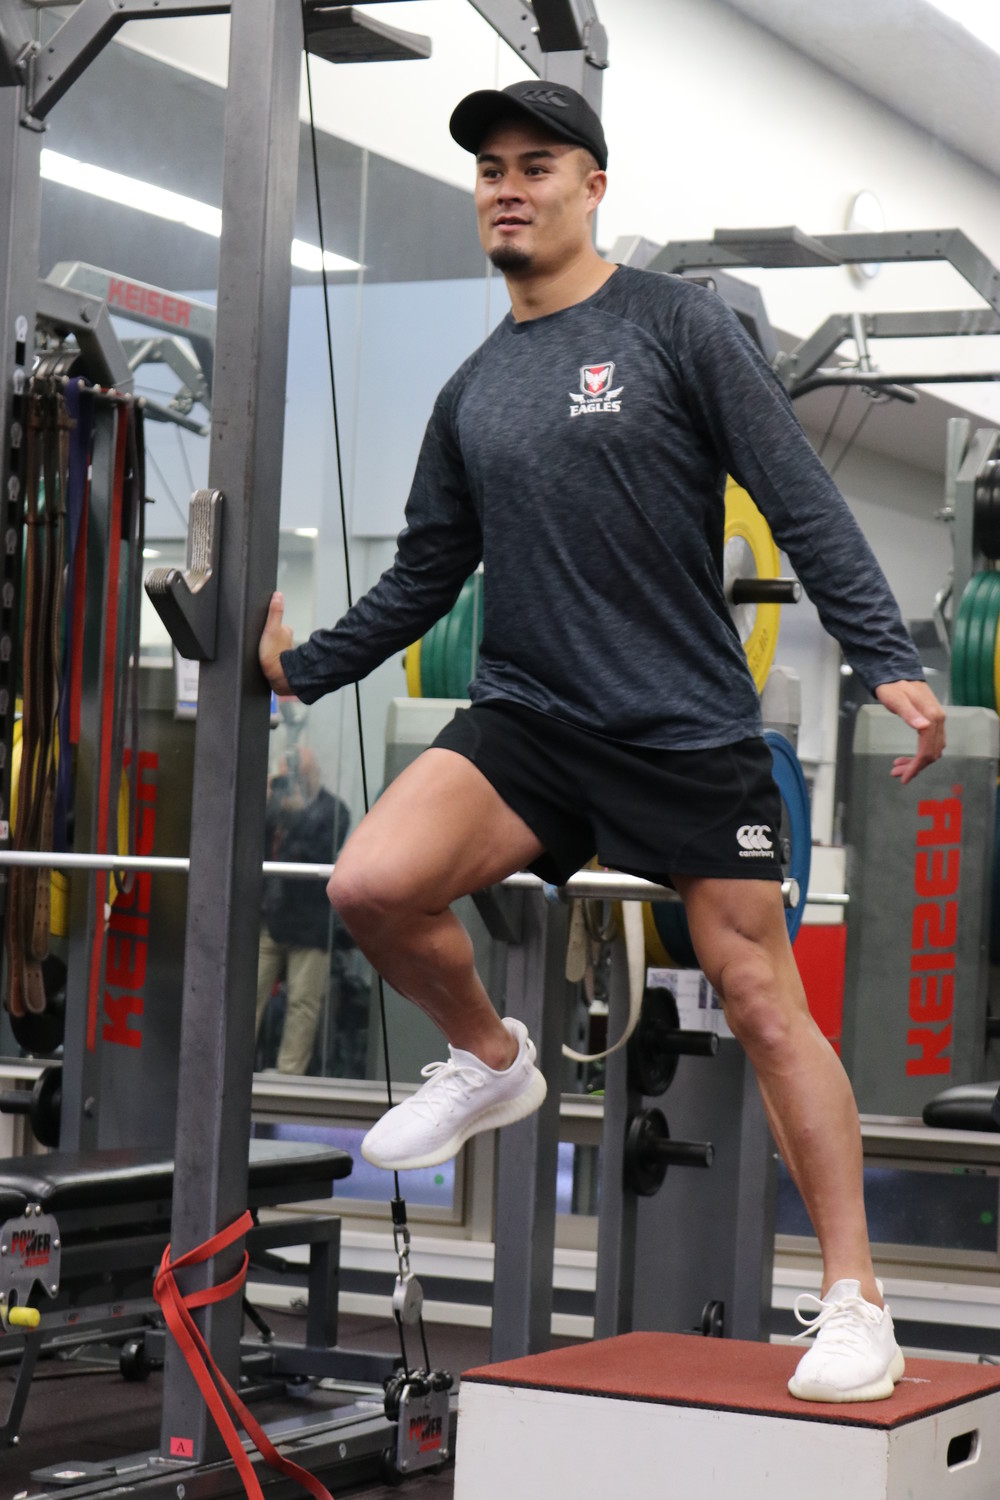 「僕、トレーニングしなくても走れるんで」　大腿筋の発達がすごい田村選手
